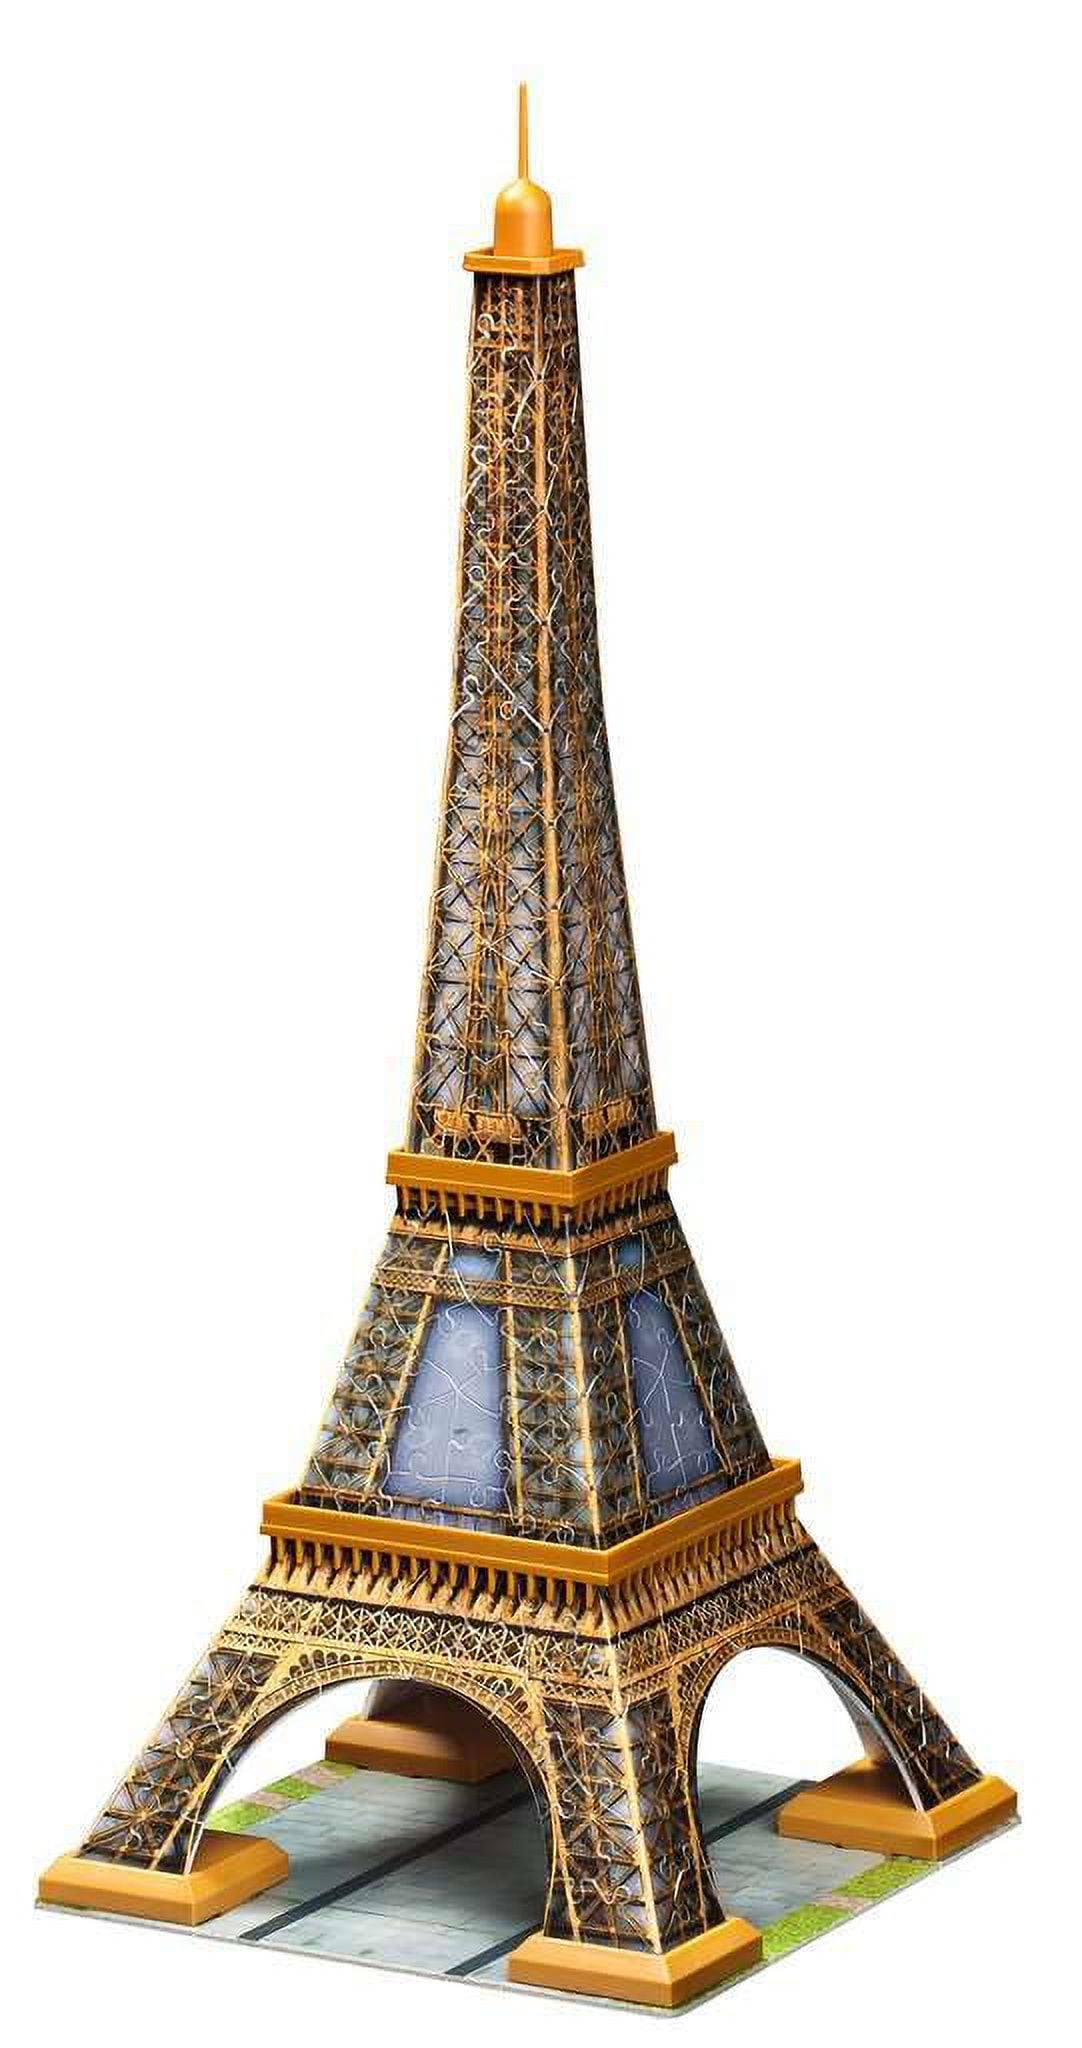 Puzzle 3d Ravensburger Puzzle 3d Tour Eiffel PSG chez 1001hobbies